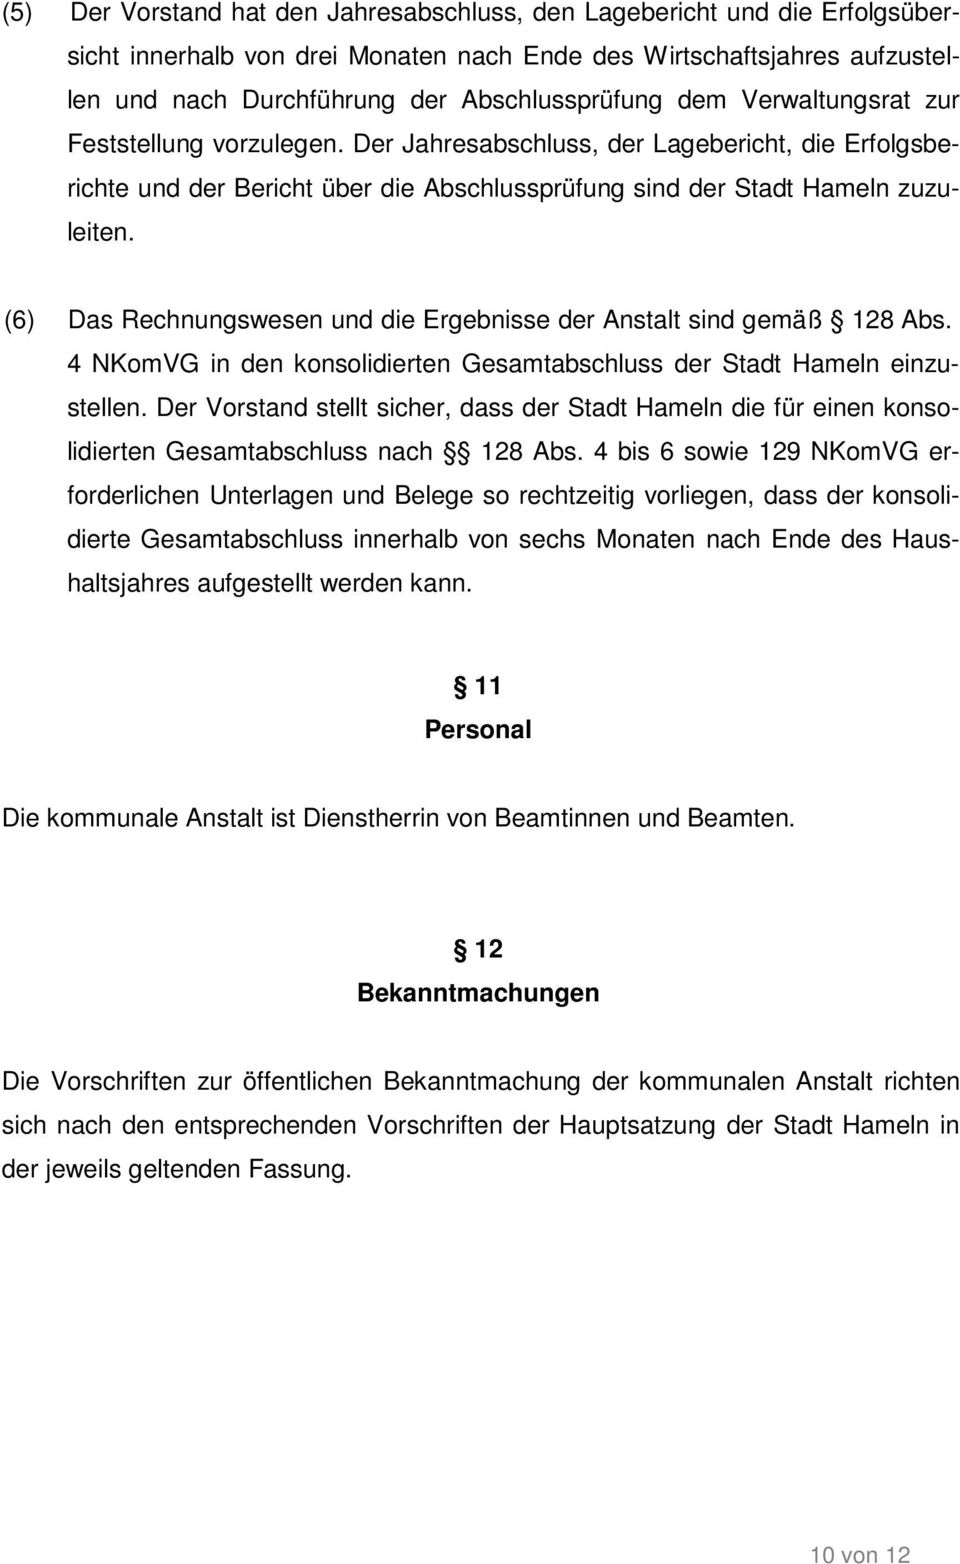 (6) Das Rechnungswesen und die Ergebnisse der Anstalt sind gemäß 128 Abs. 4 NKomVG in den konsolidierten Gesamtabschluss der Stadt Hameln einzustellen.